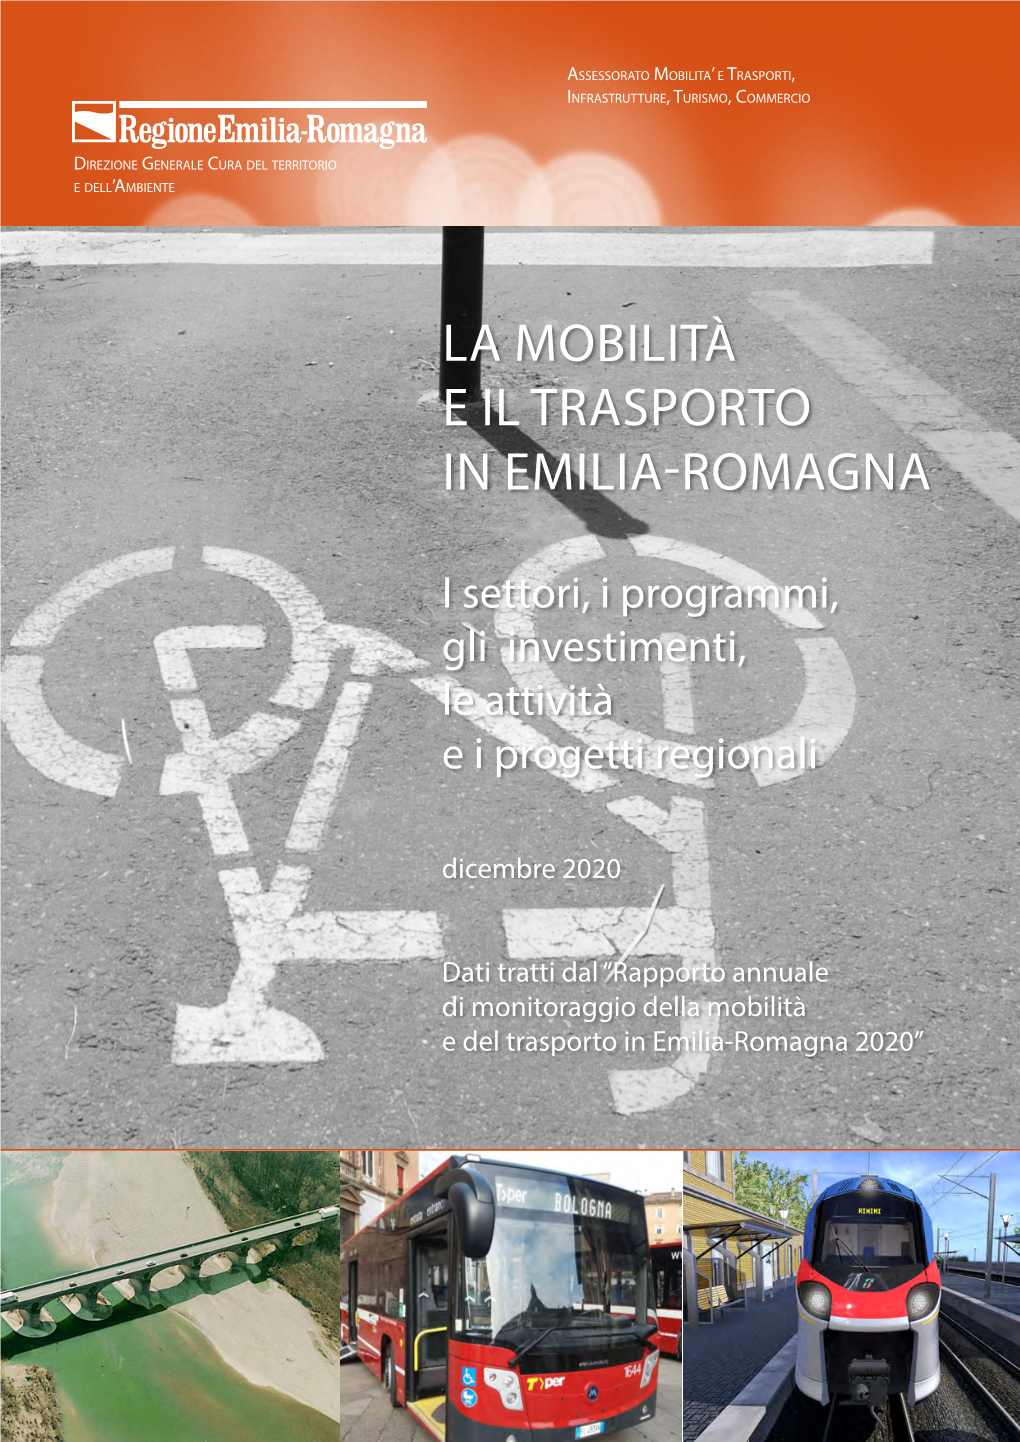 La Mobilità E Il Trasporto in Emilia-Romagna